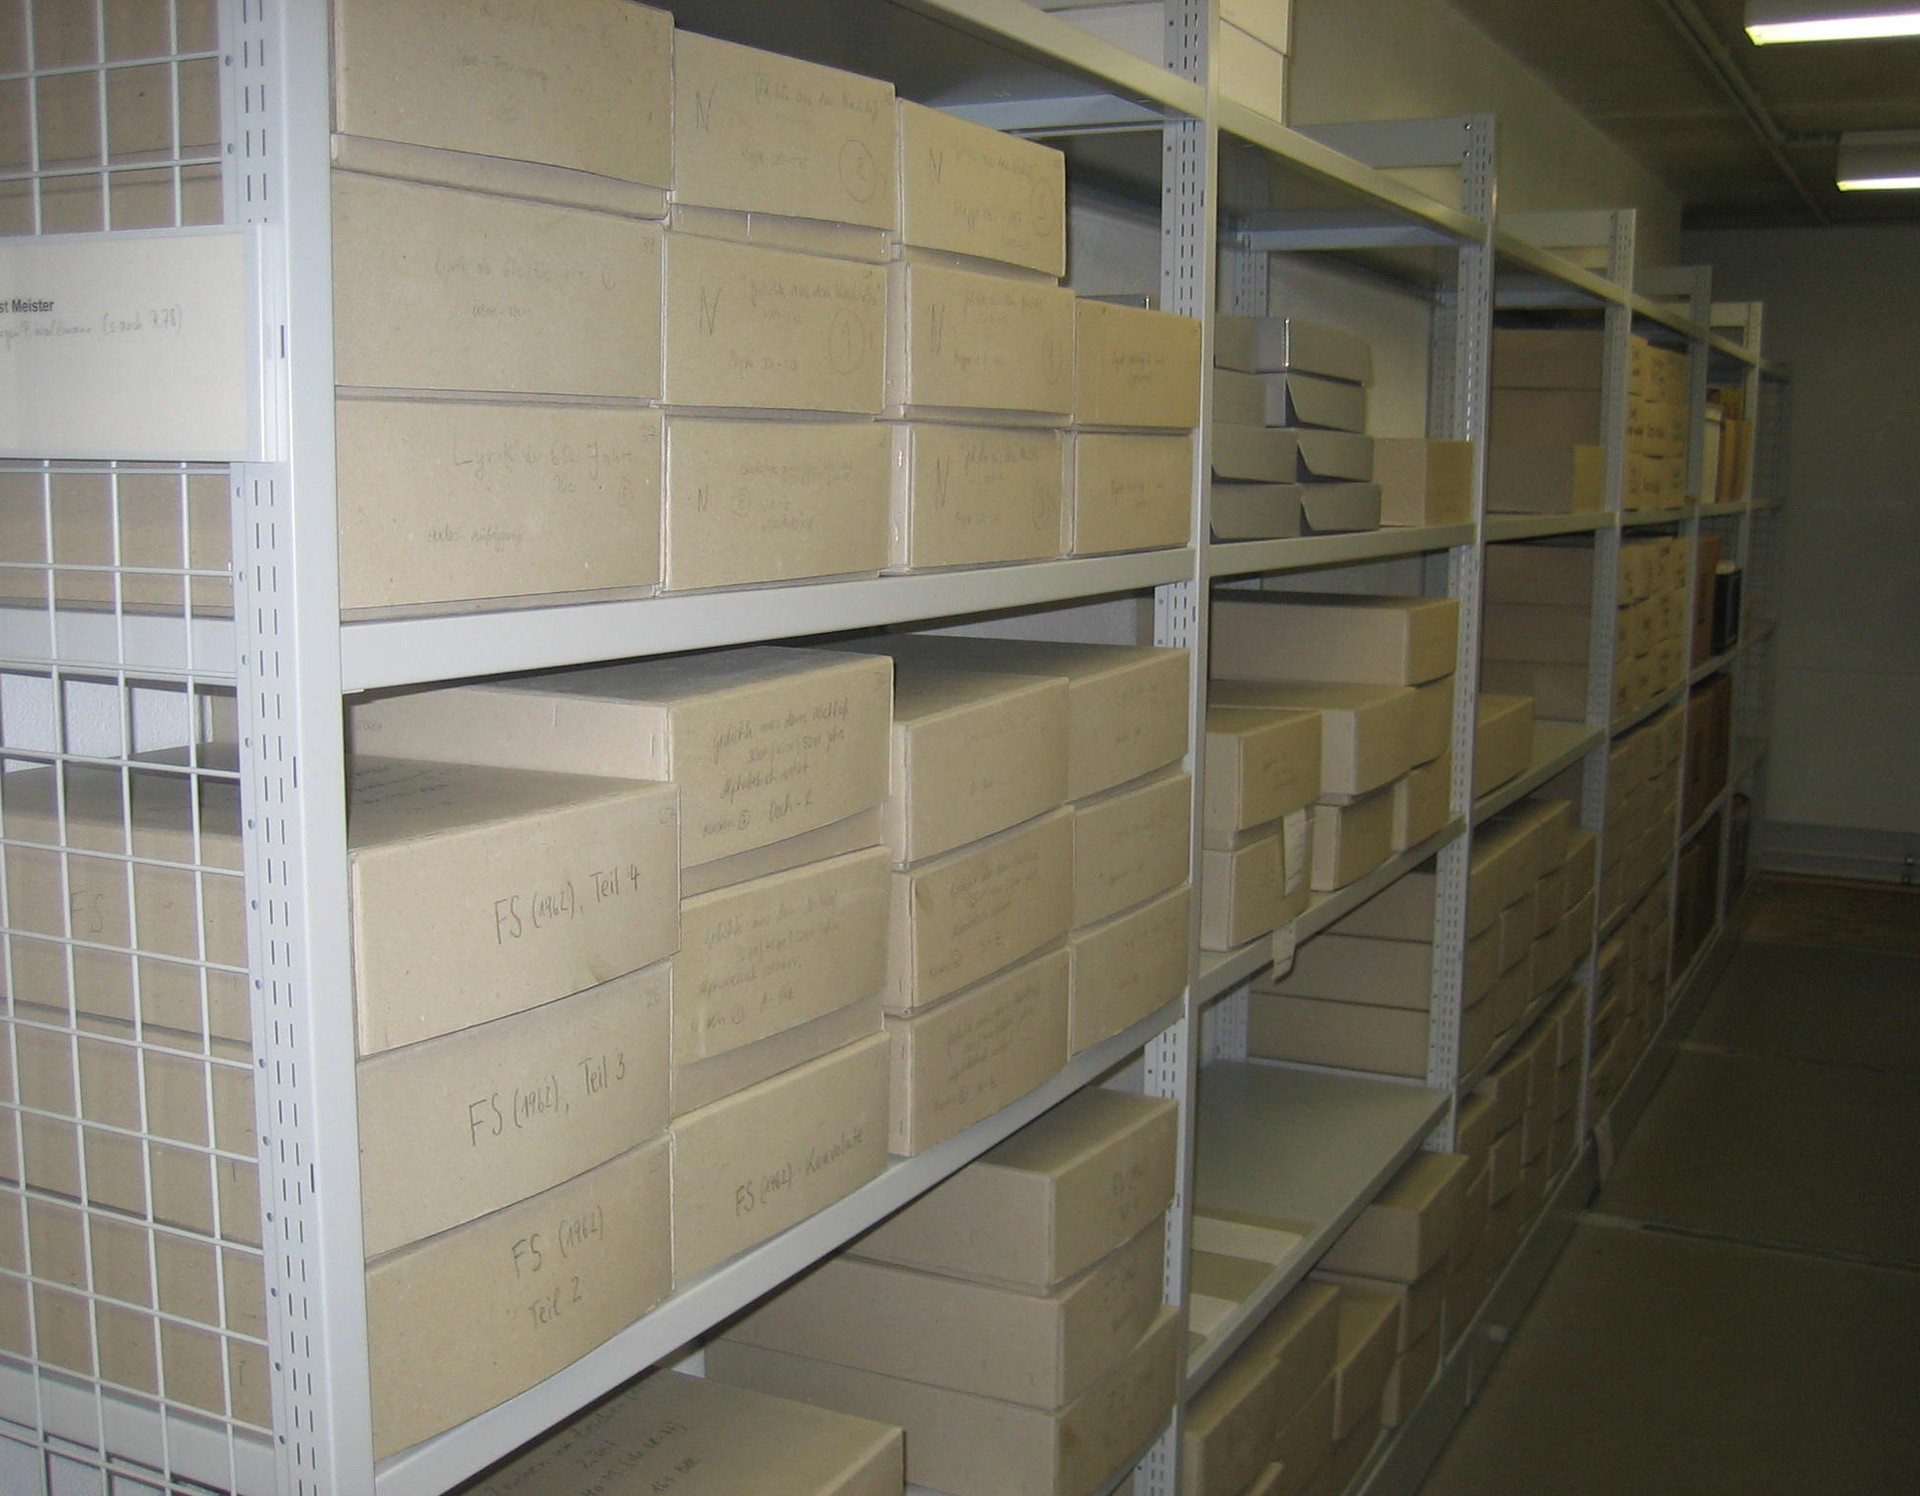 Einblick in das Literaturarchiv, Schwerlastregale mit beschrifteten Kartons